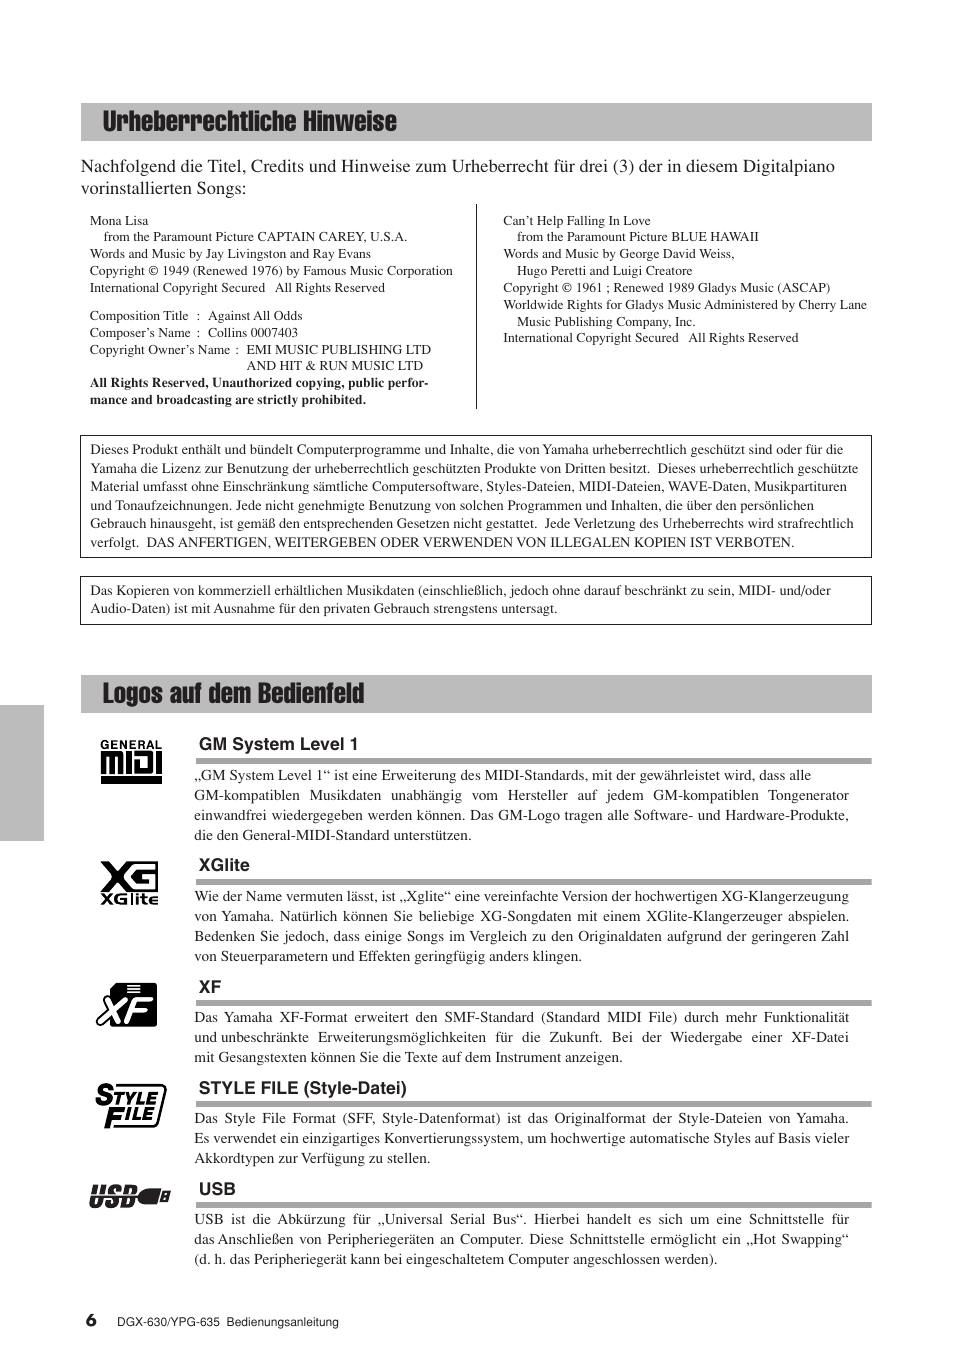 Urheberrechtliche hinweise, Logos auf dem bedienfeld | Yamaha DGX-630 Benutzerhandbuch | Seite 6 / 160